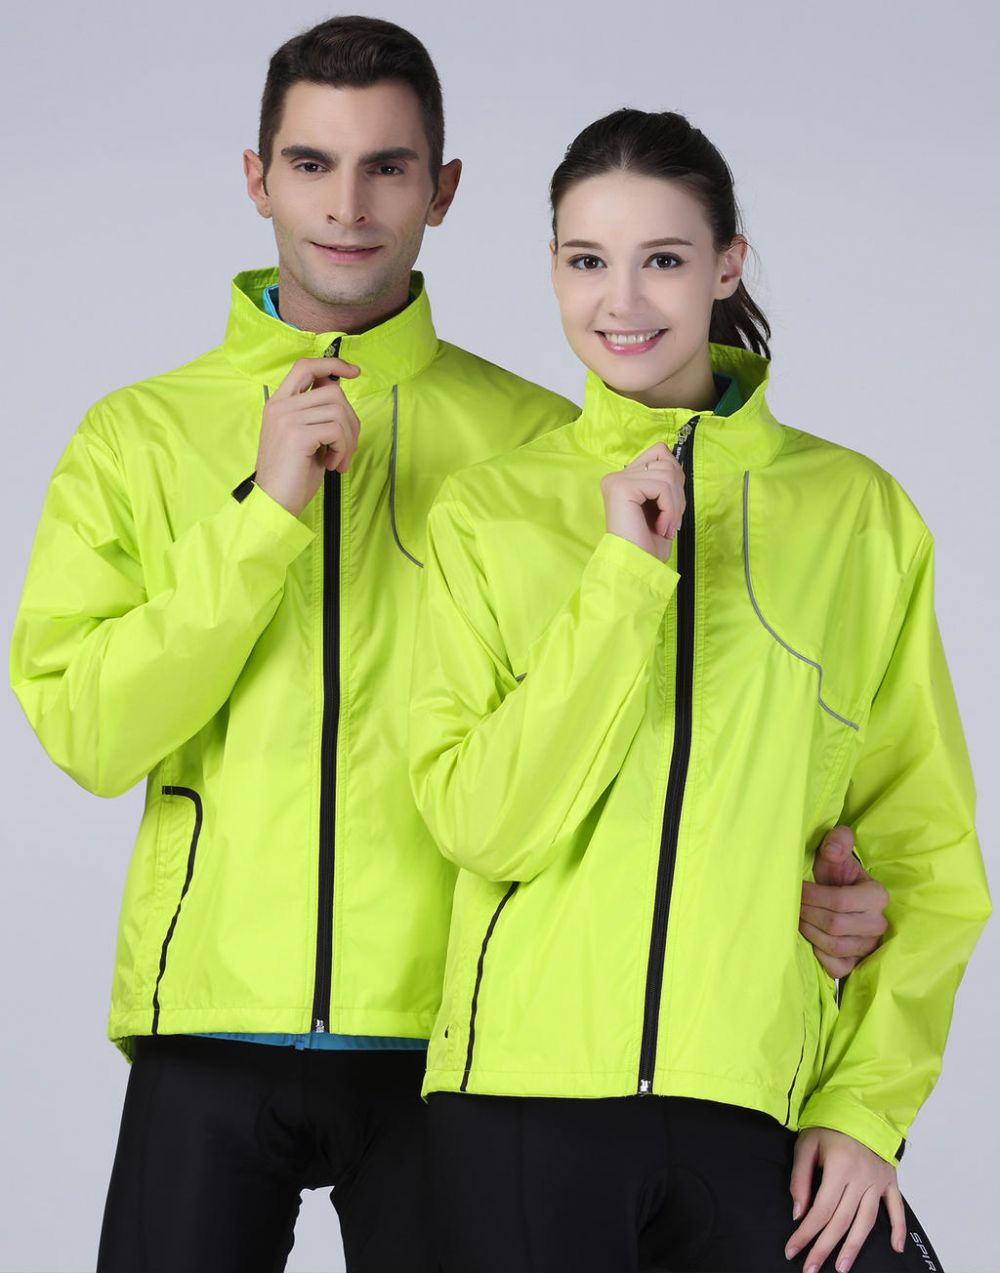 Sportsausrüstung result spiro cycling jacket mit werbung bilden 3